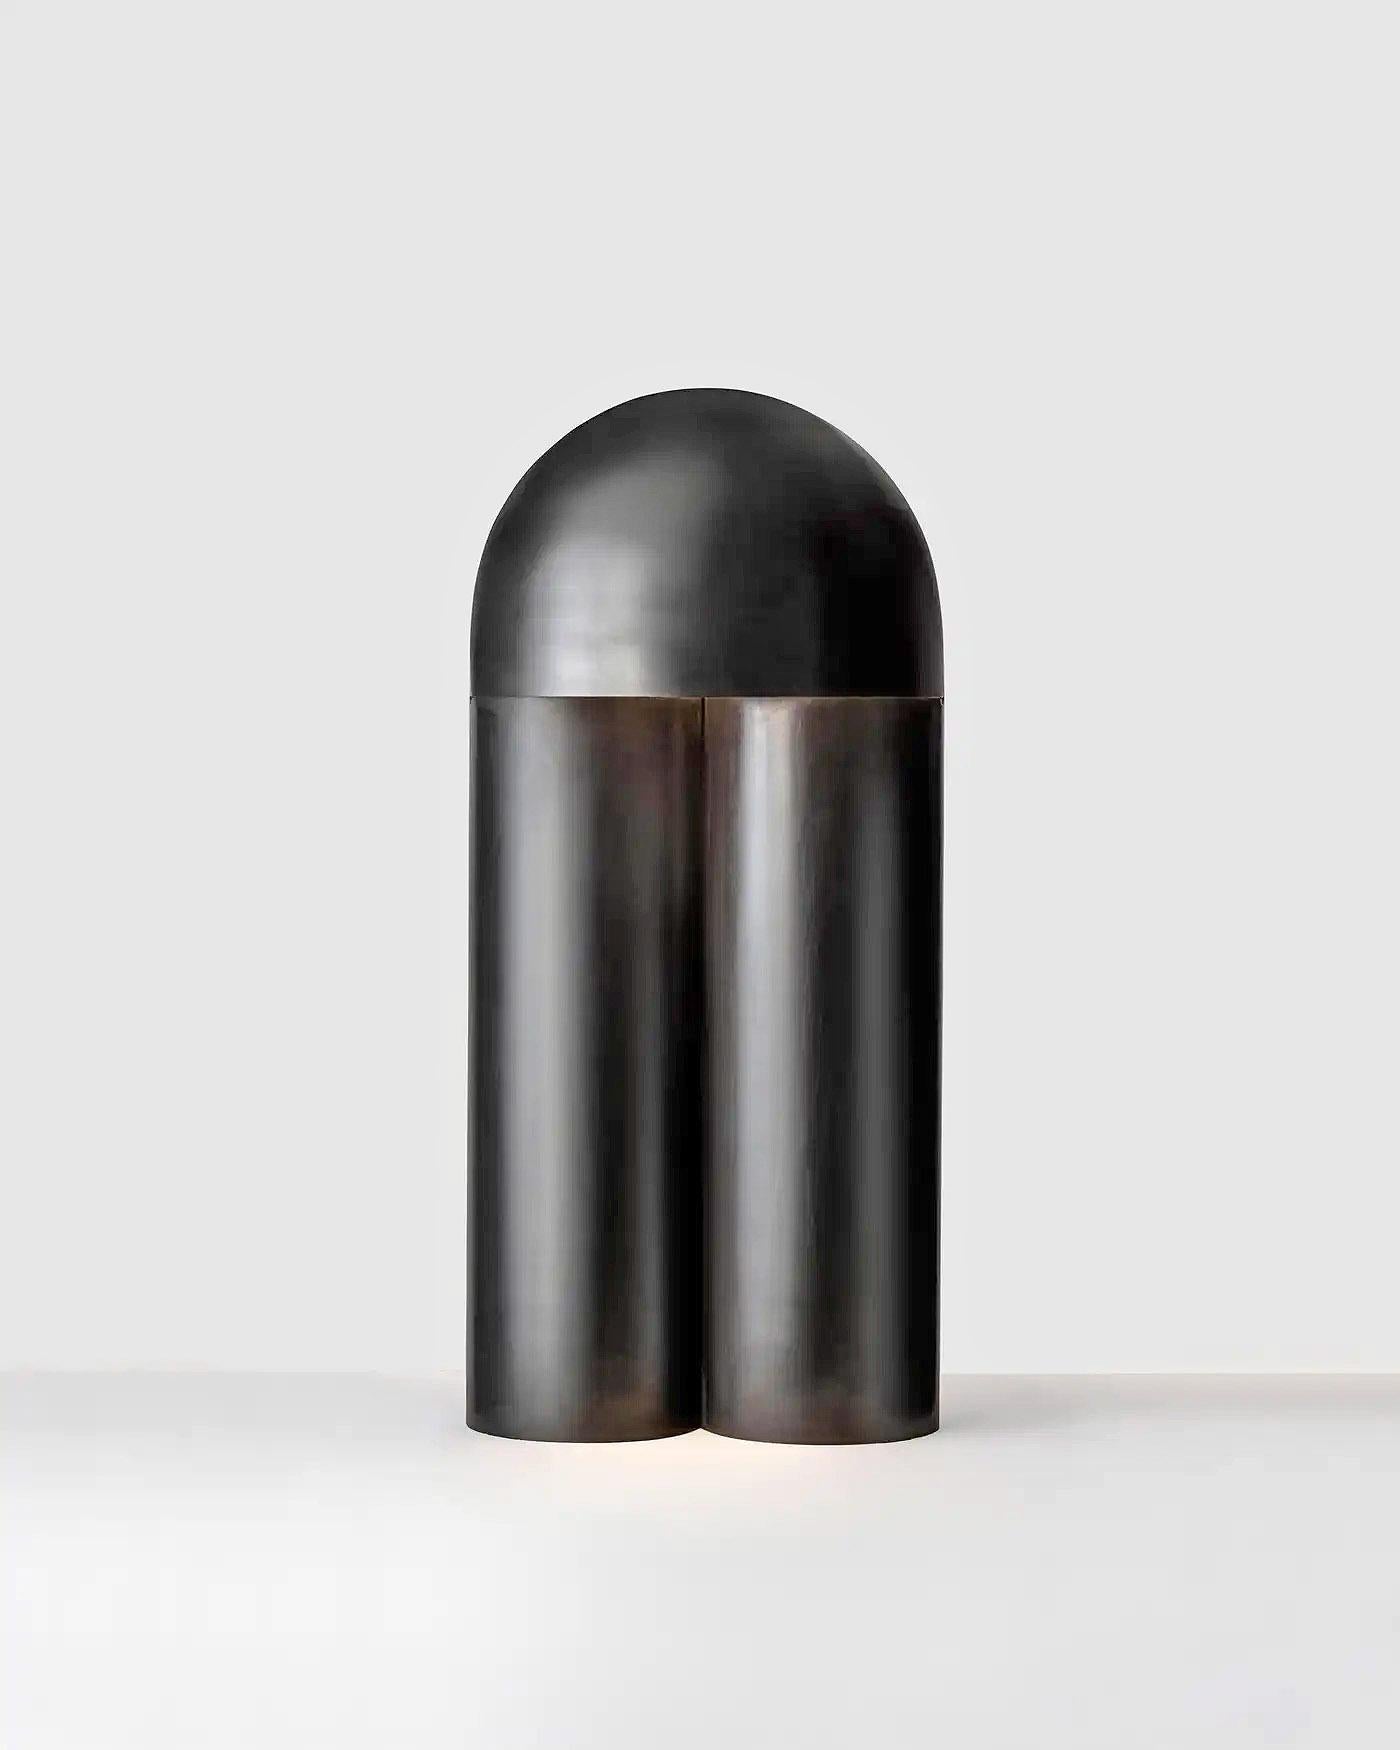 Lampe de table contemporaine sculptée en laiton brûlé, Monolith Large by Paul Matter

La lampe Monolith est un exercice de réduction. Sculptées à partir d'un seul corps à l'aide de simples partitions et de plis, la géométrie des lampes, la texture